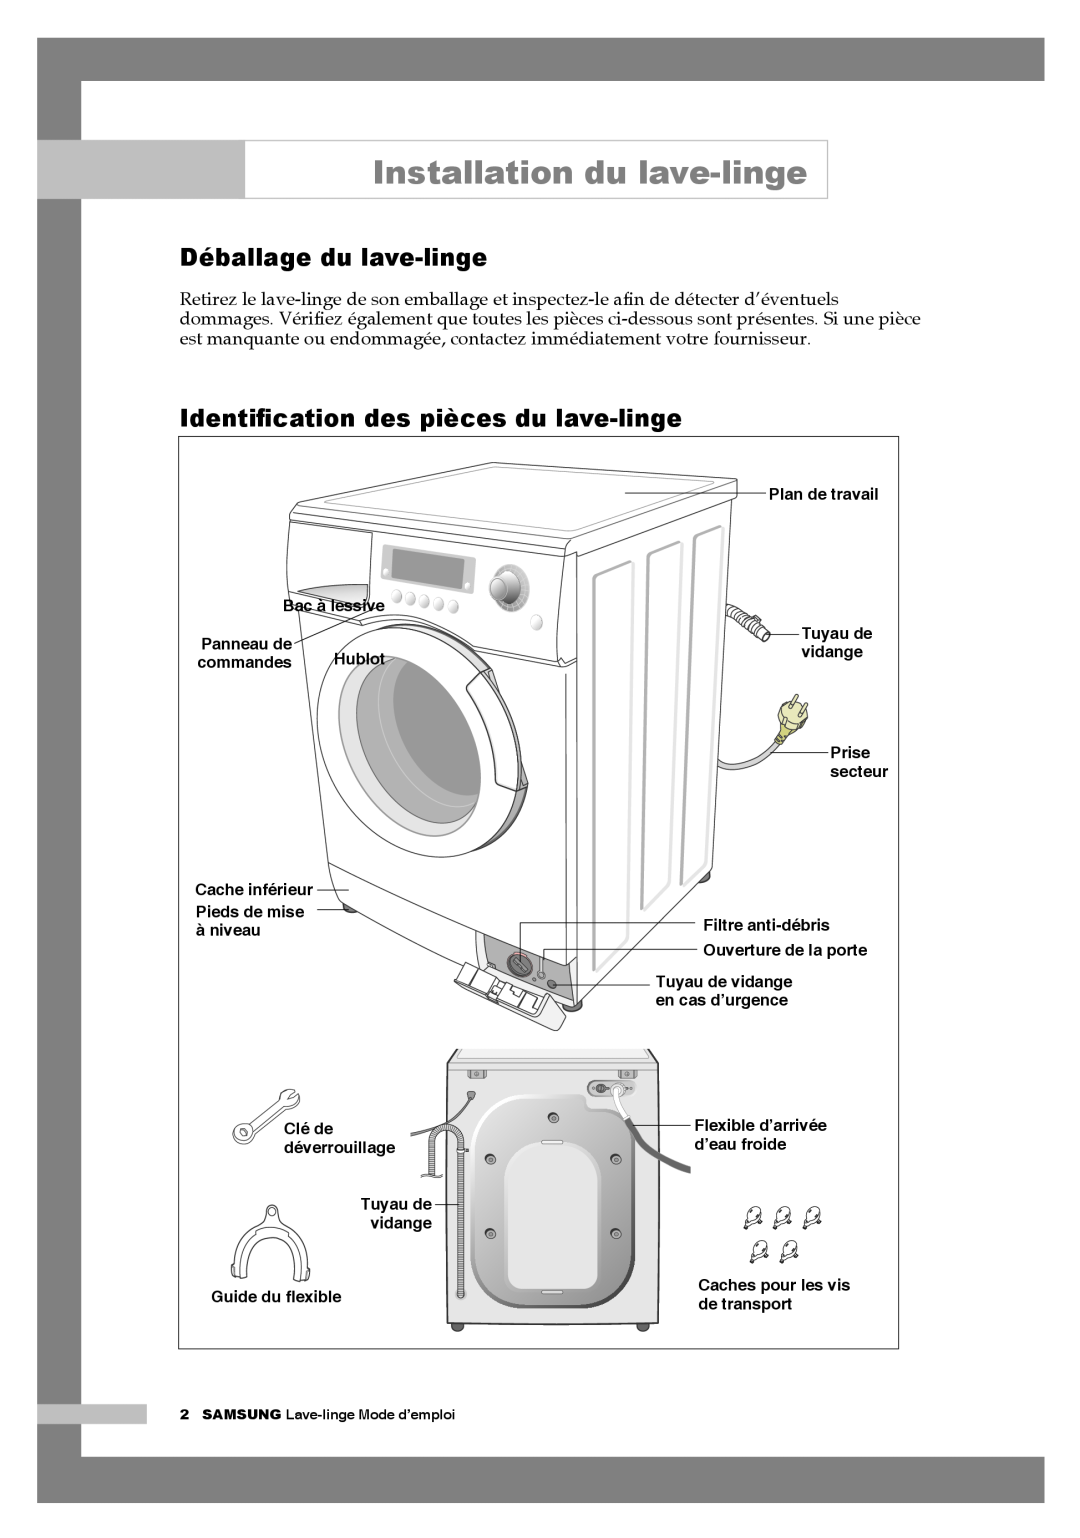 Samsung Q1457AVGW1/XEF manual Installation du lave-linge, Déballage du lave-linge, Identiﬁcation des pièces du lave-linge 